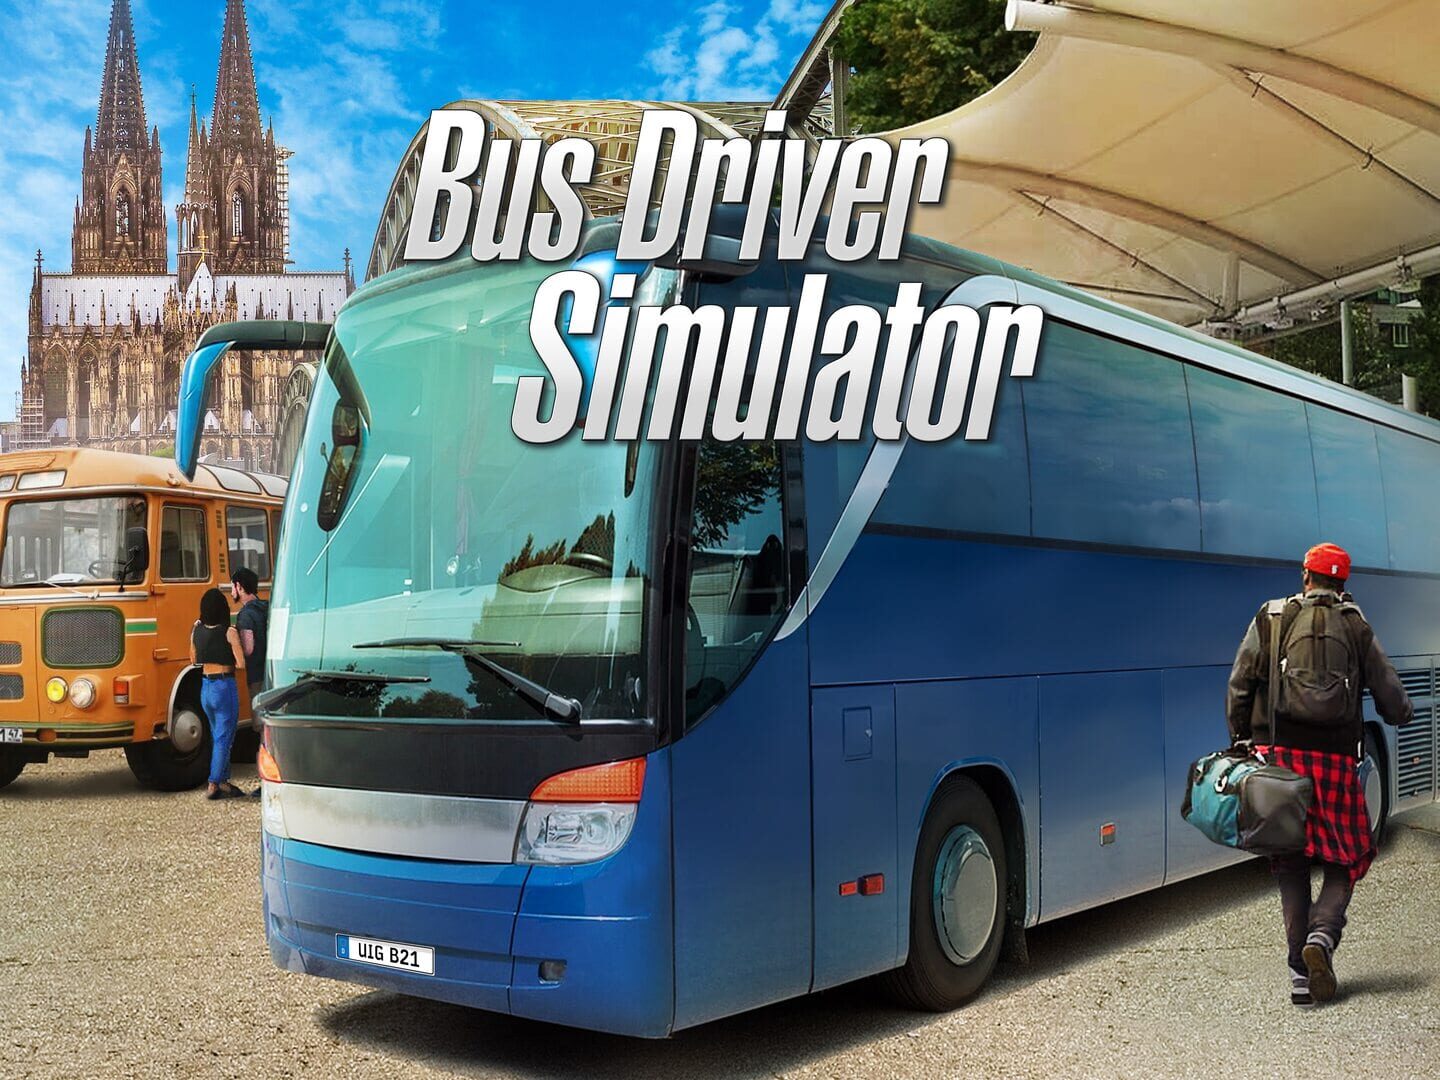 Bus Driver Simulator artwork